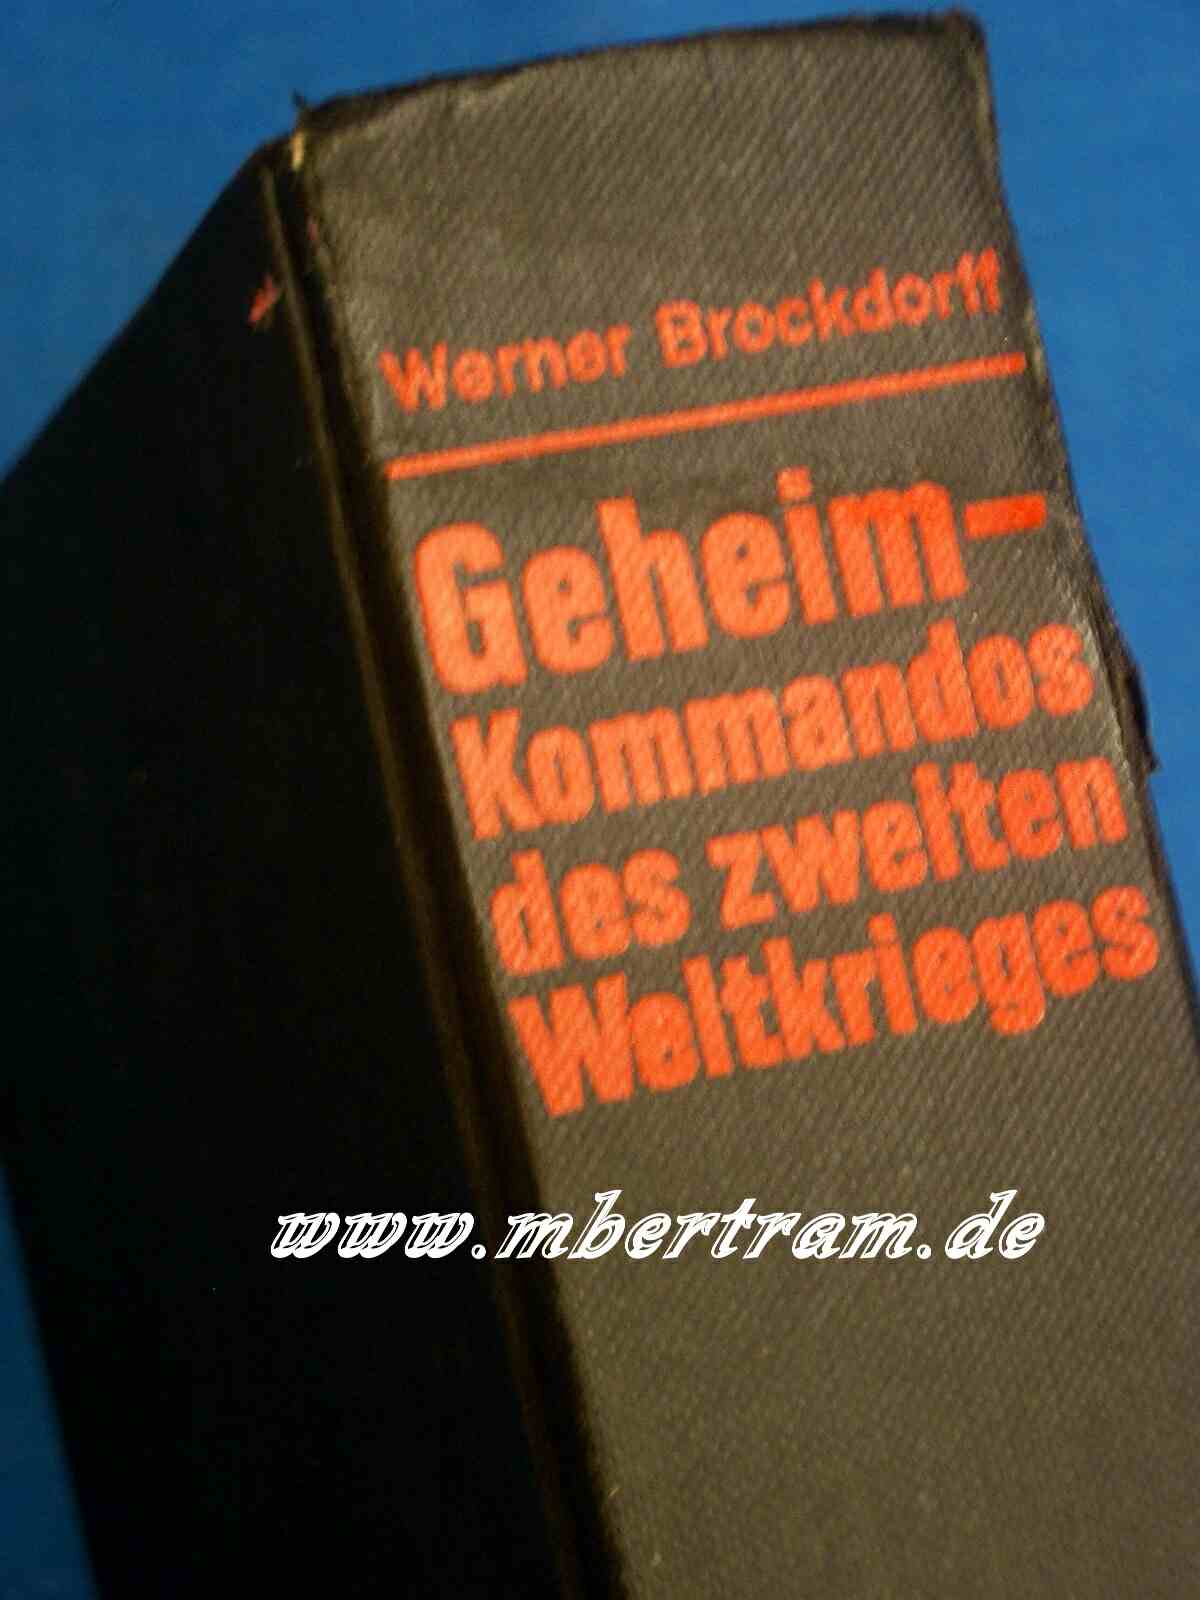 Brockdorff, W.. Geheimkommandos des zweiten Weltkrieges